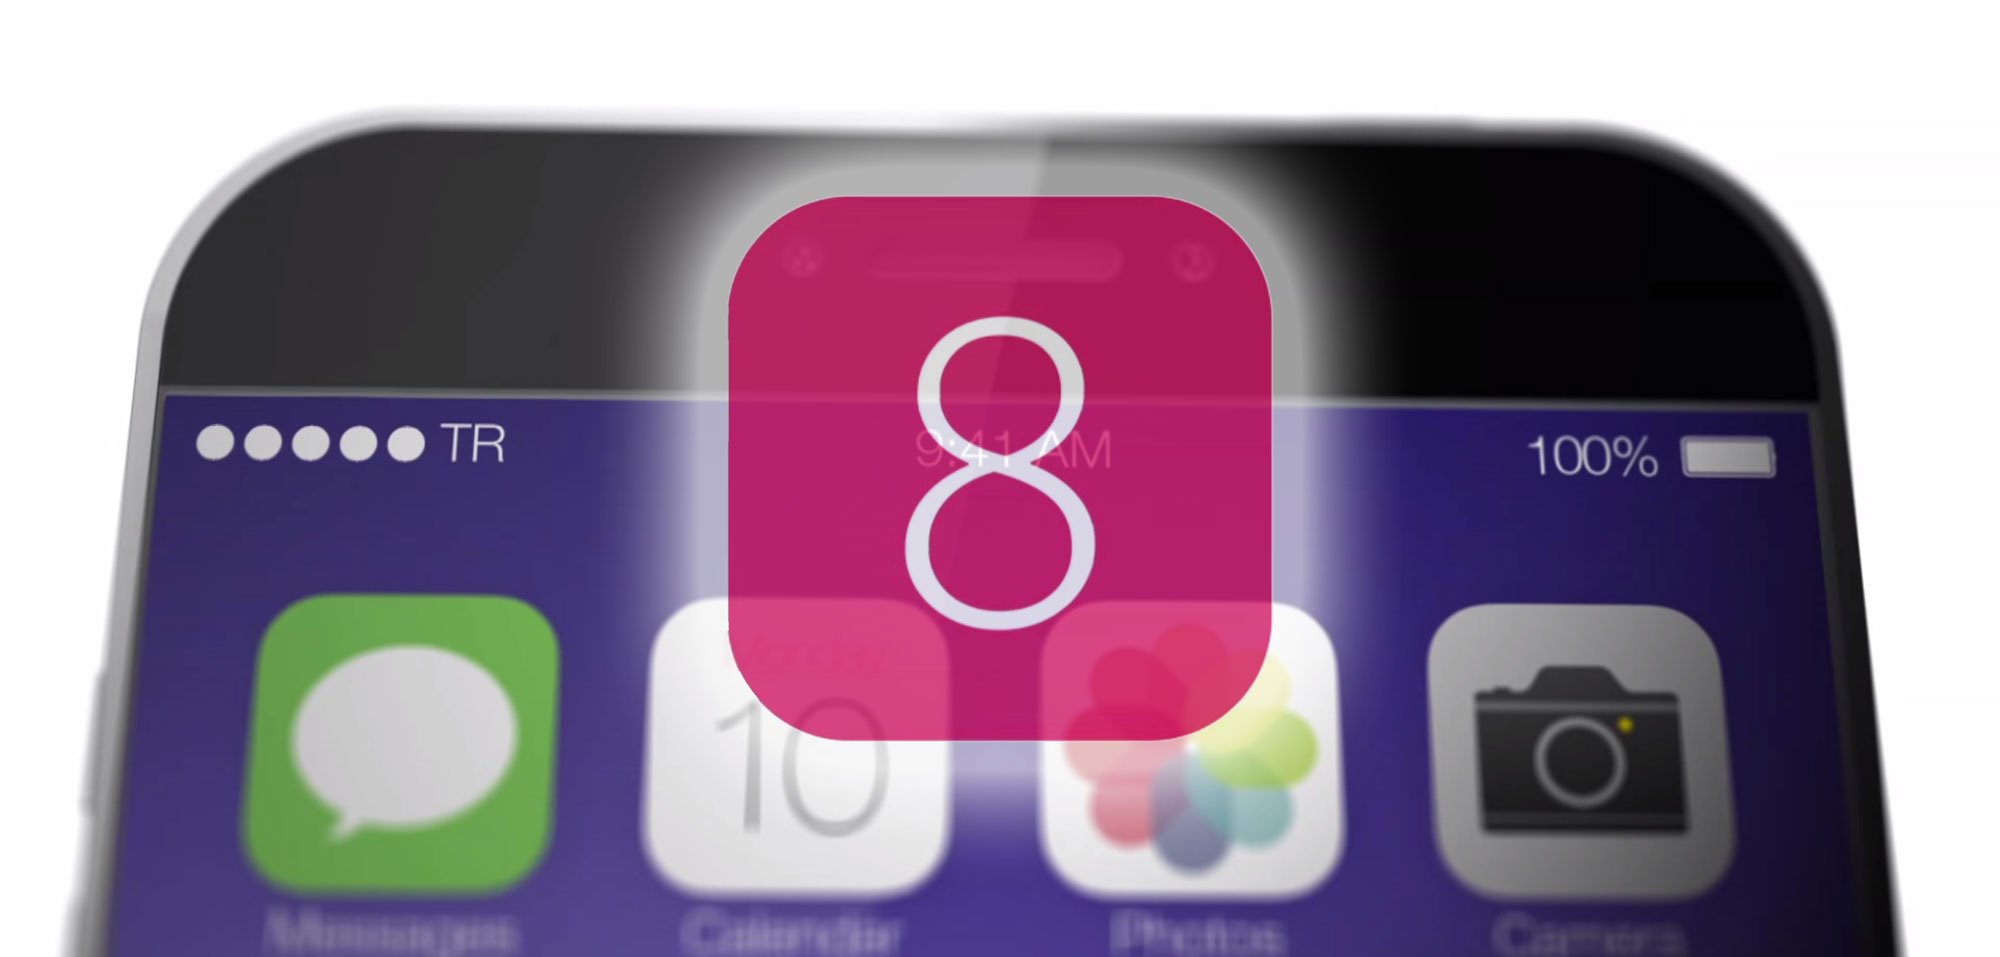 iOS 8: Neue Funktionen erst mit iOS 8.1 statt iOS 8? 10